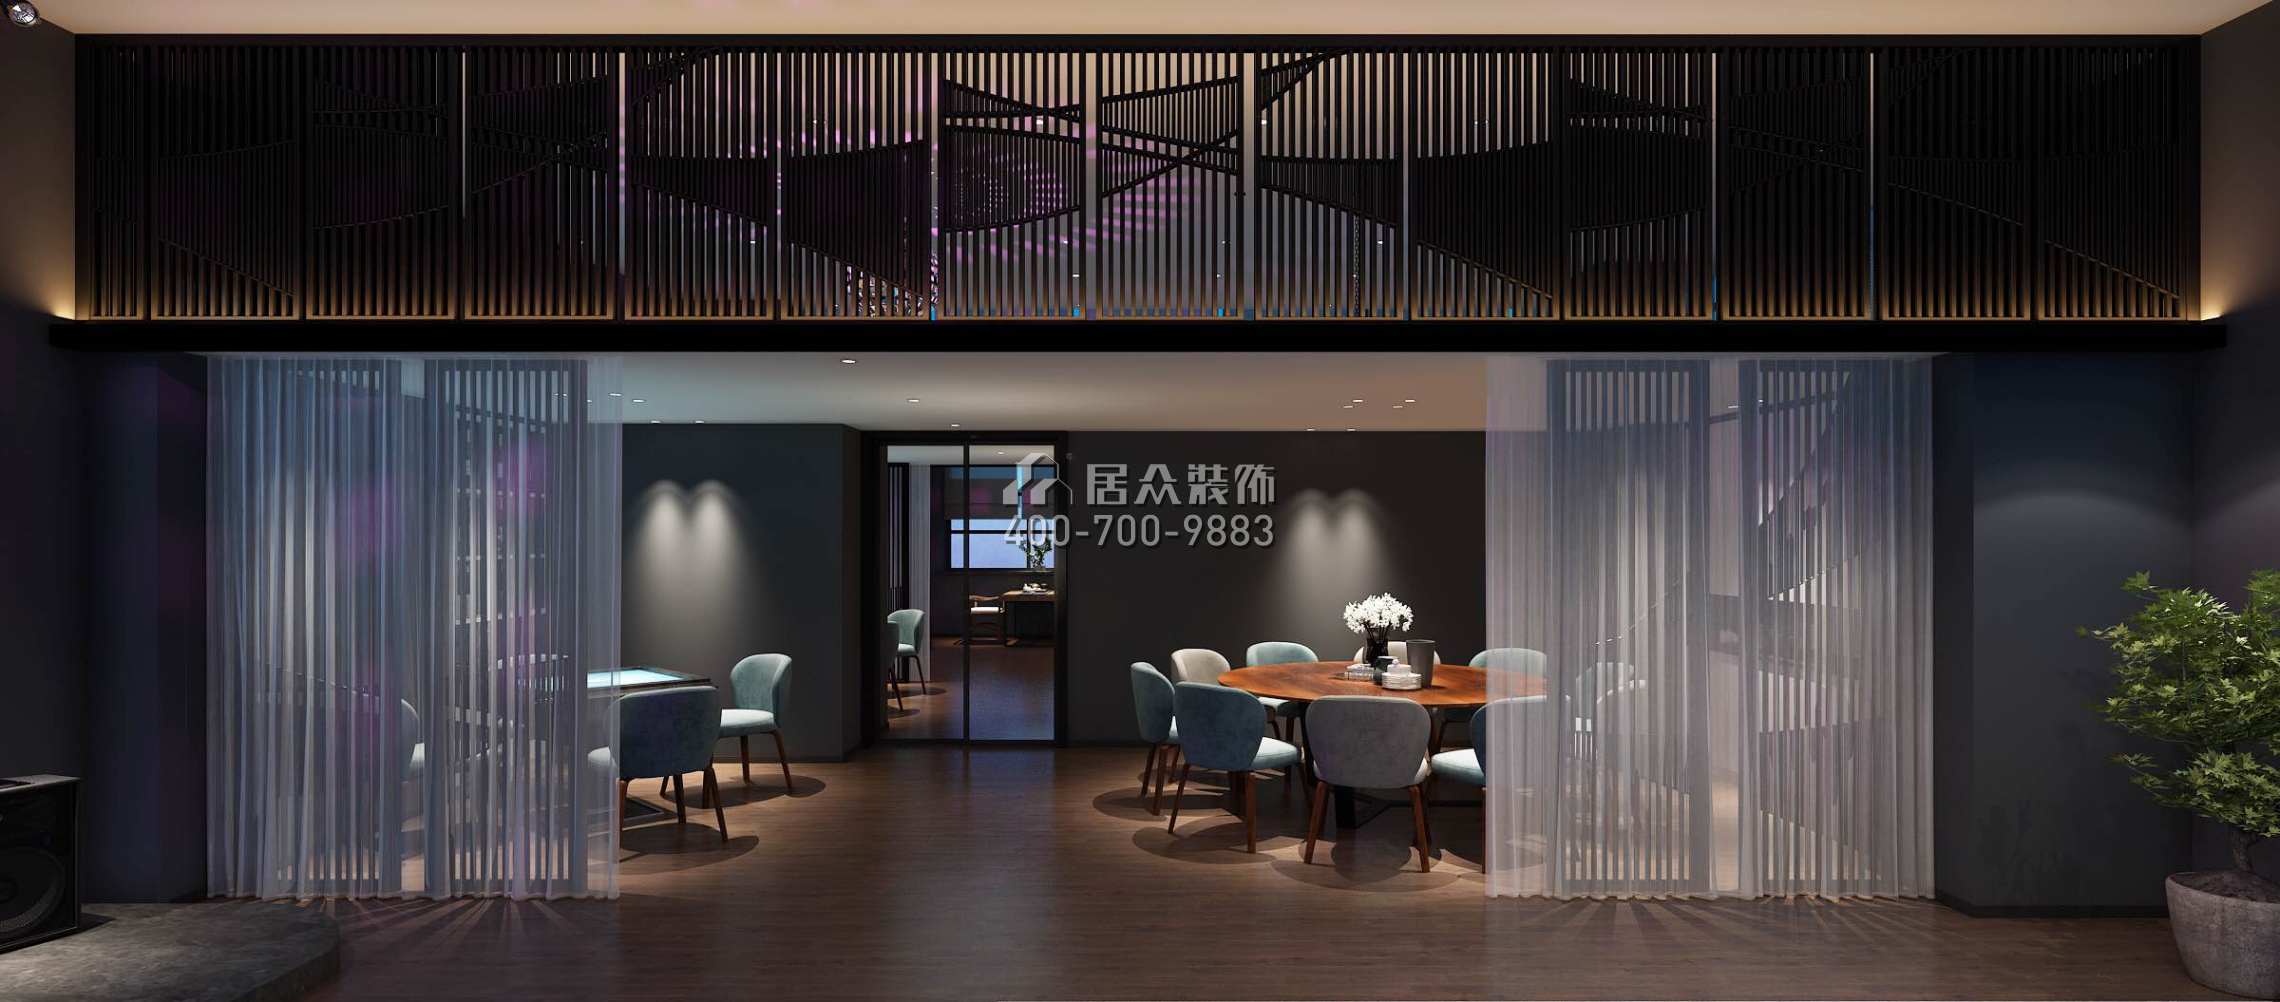 万达湖公馆350平方米其他风格公装（已弃用）户型餐厅（中国）科技有限公司官网效果图